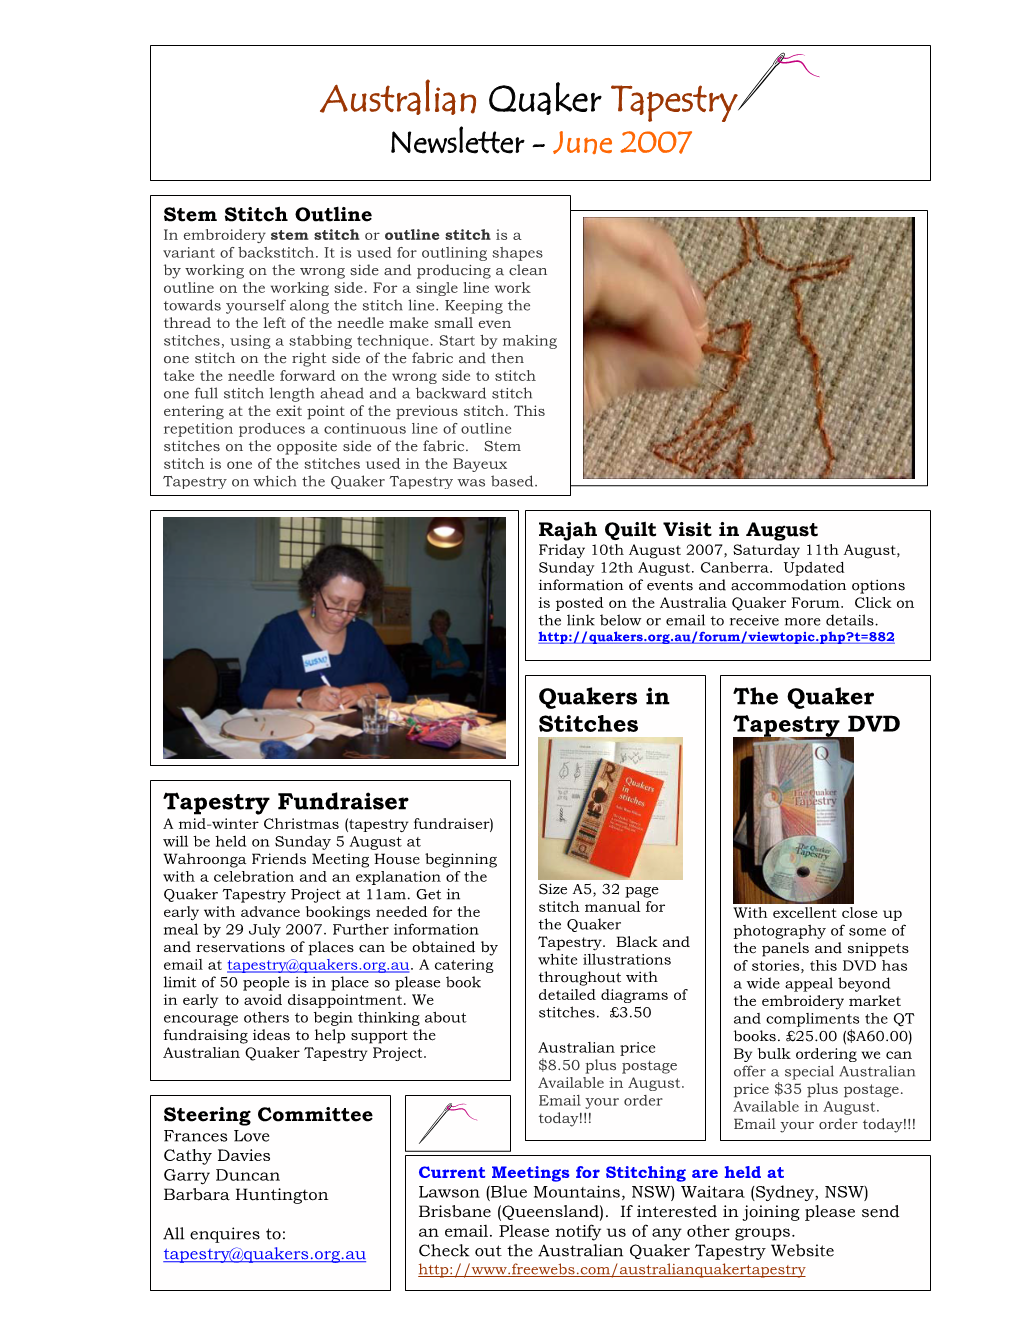 Australian Quaker Tapestry Newsletter - June 2007